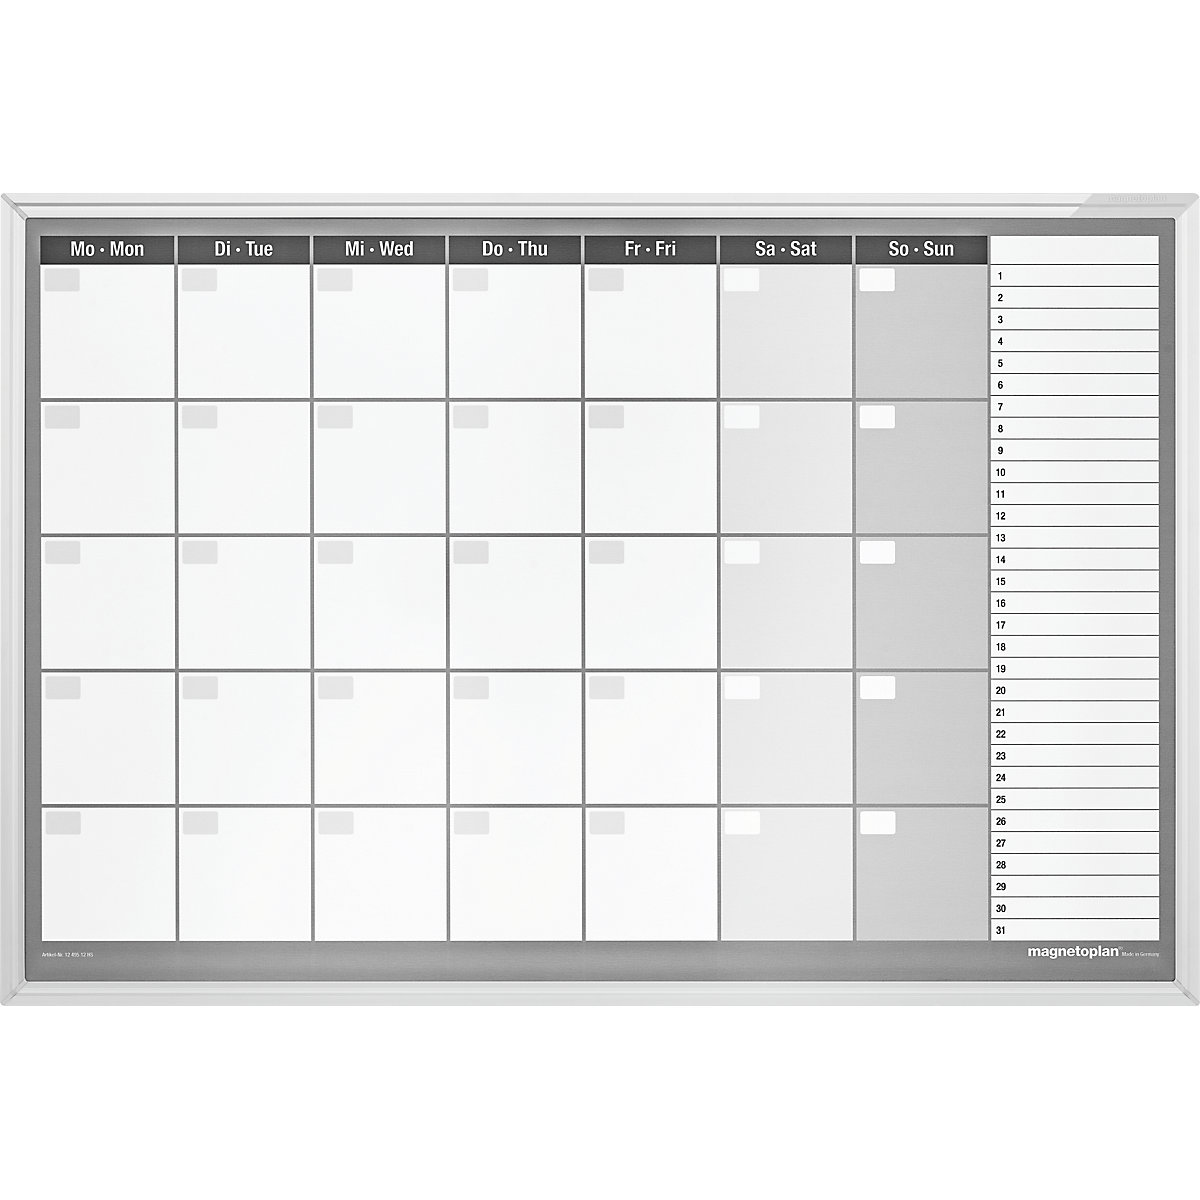 Planning mensile tipo CC, set di accessori incl. – magnetoplan